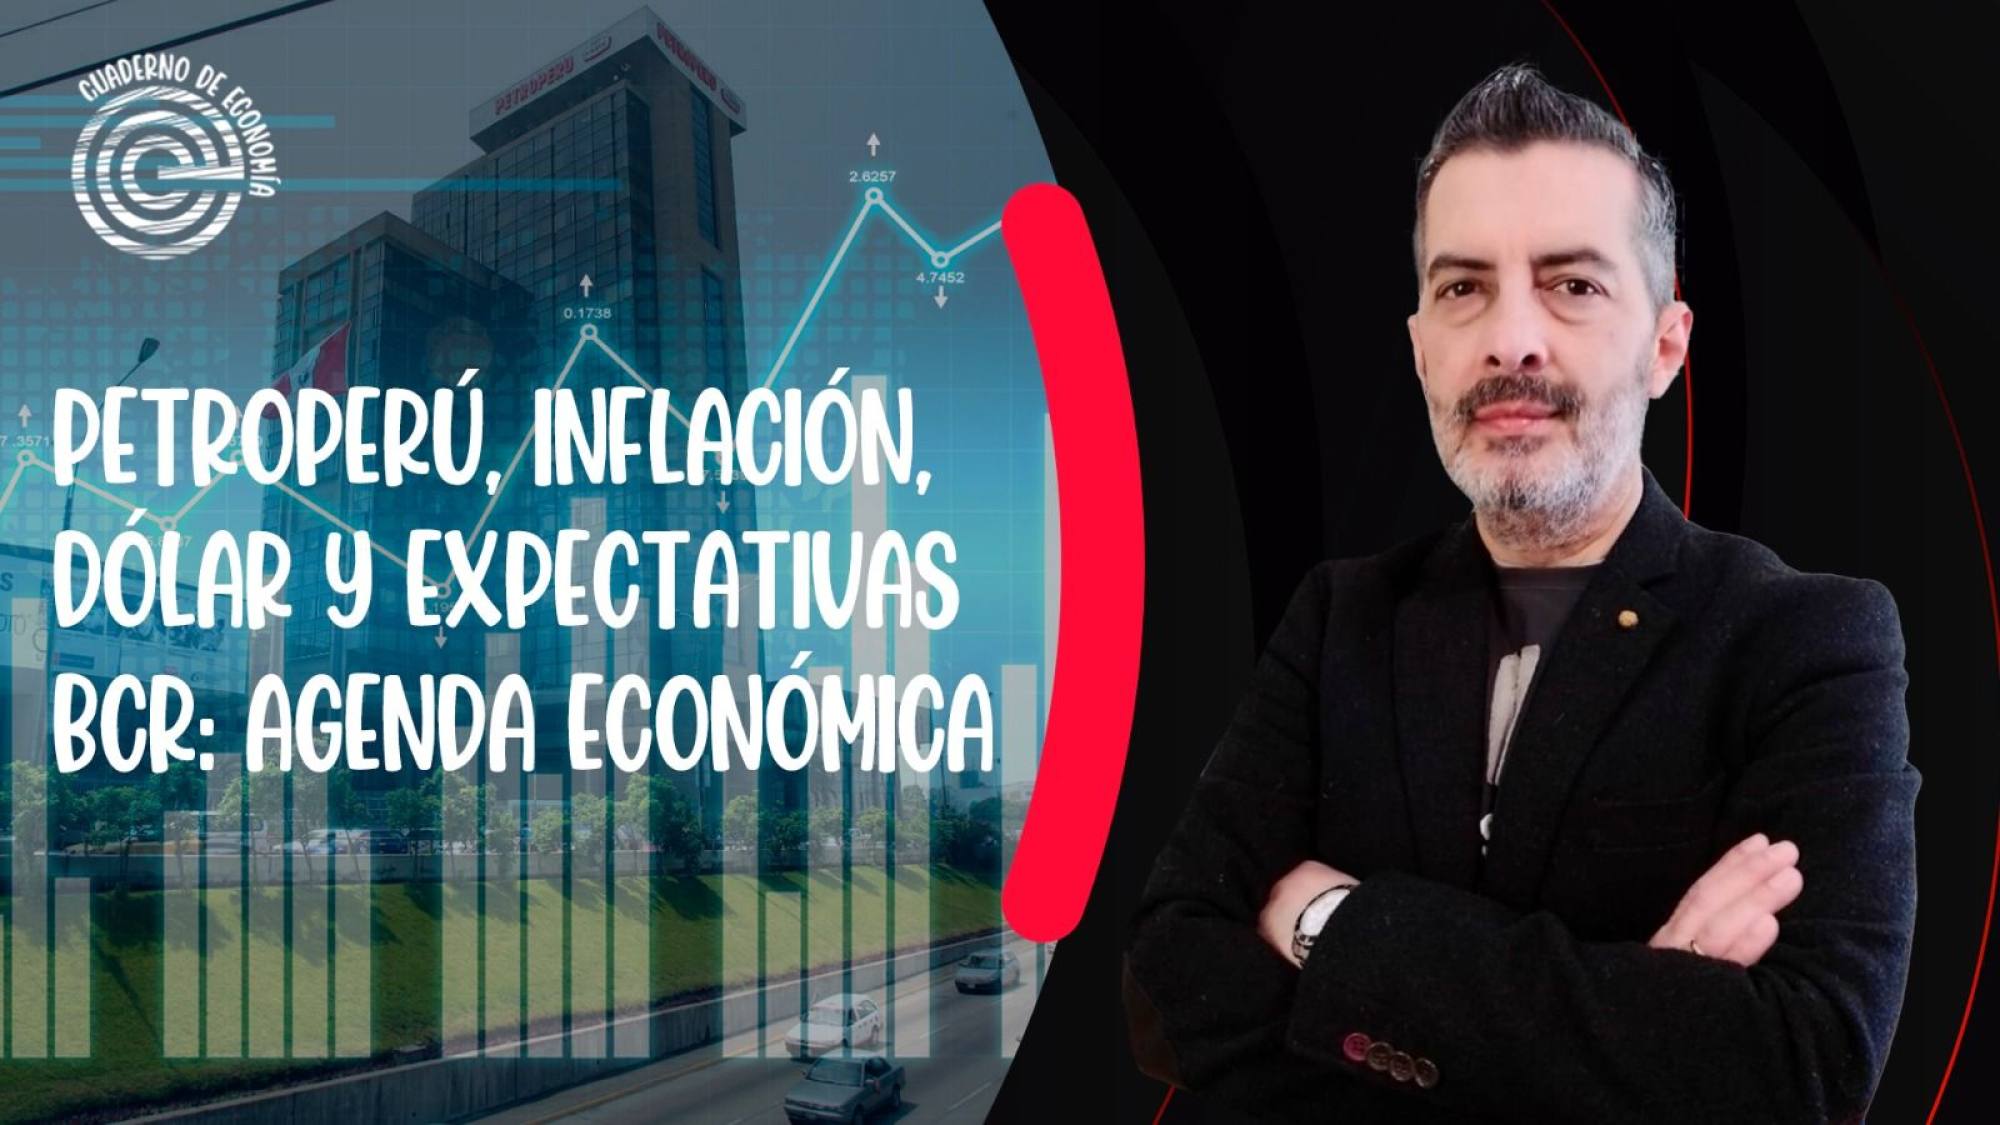 Petroperú, inflación, dólar y expectativas BCR: agenda económica, Epicentro TV